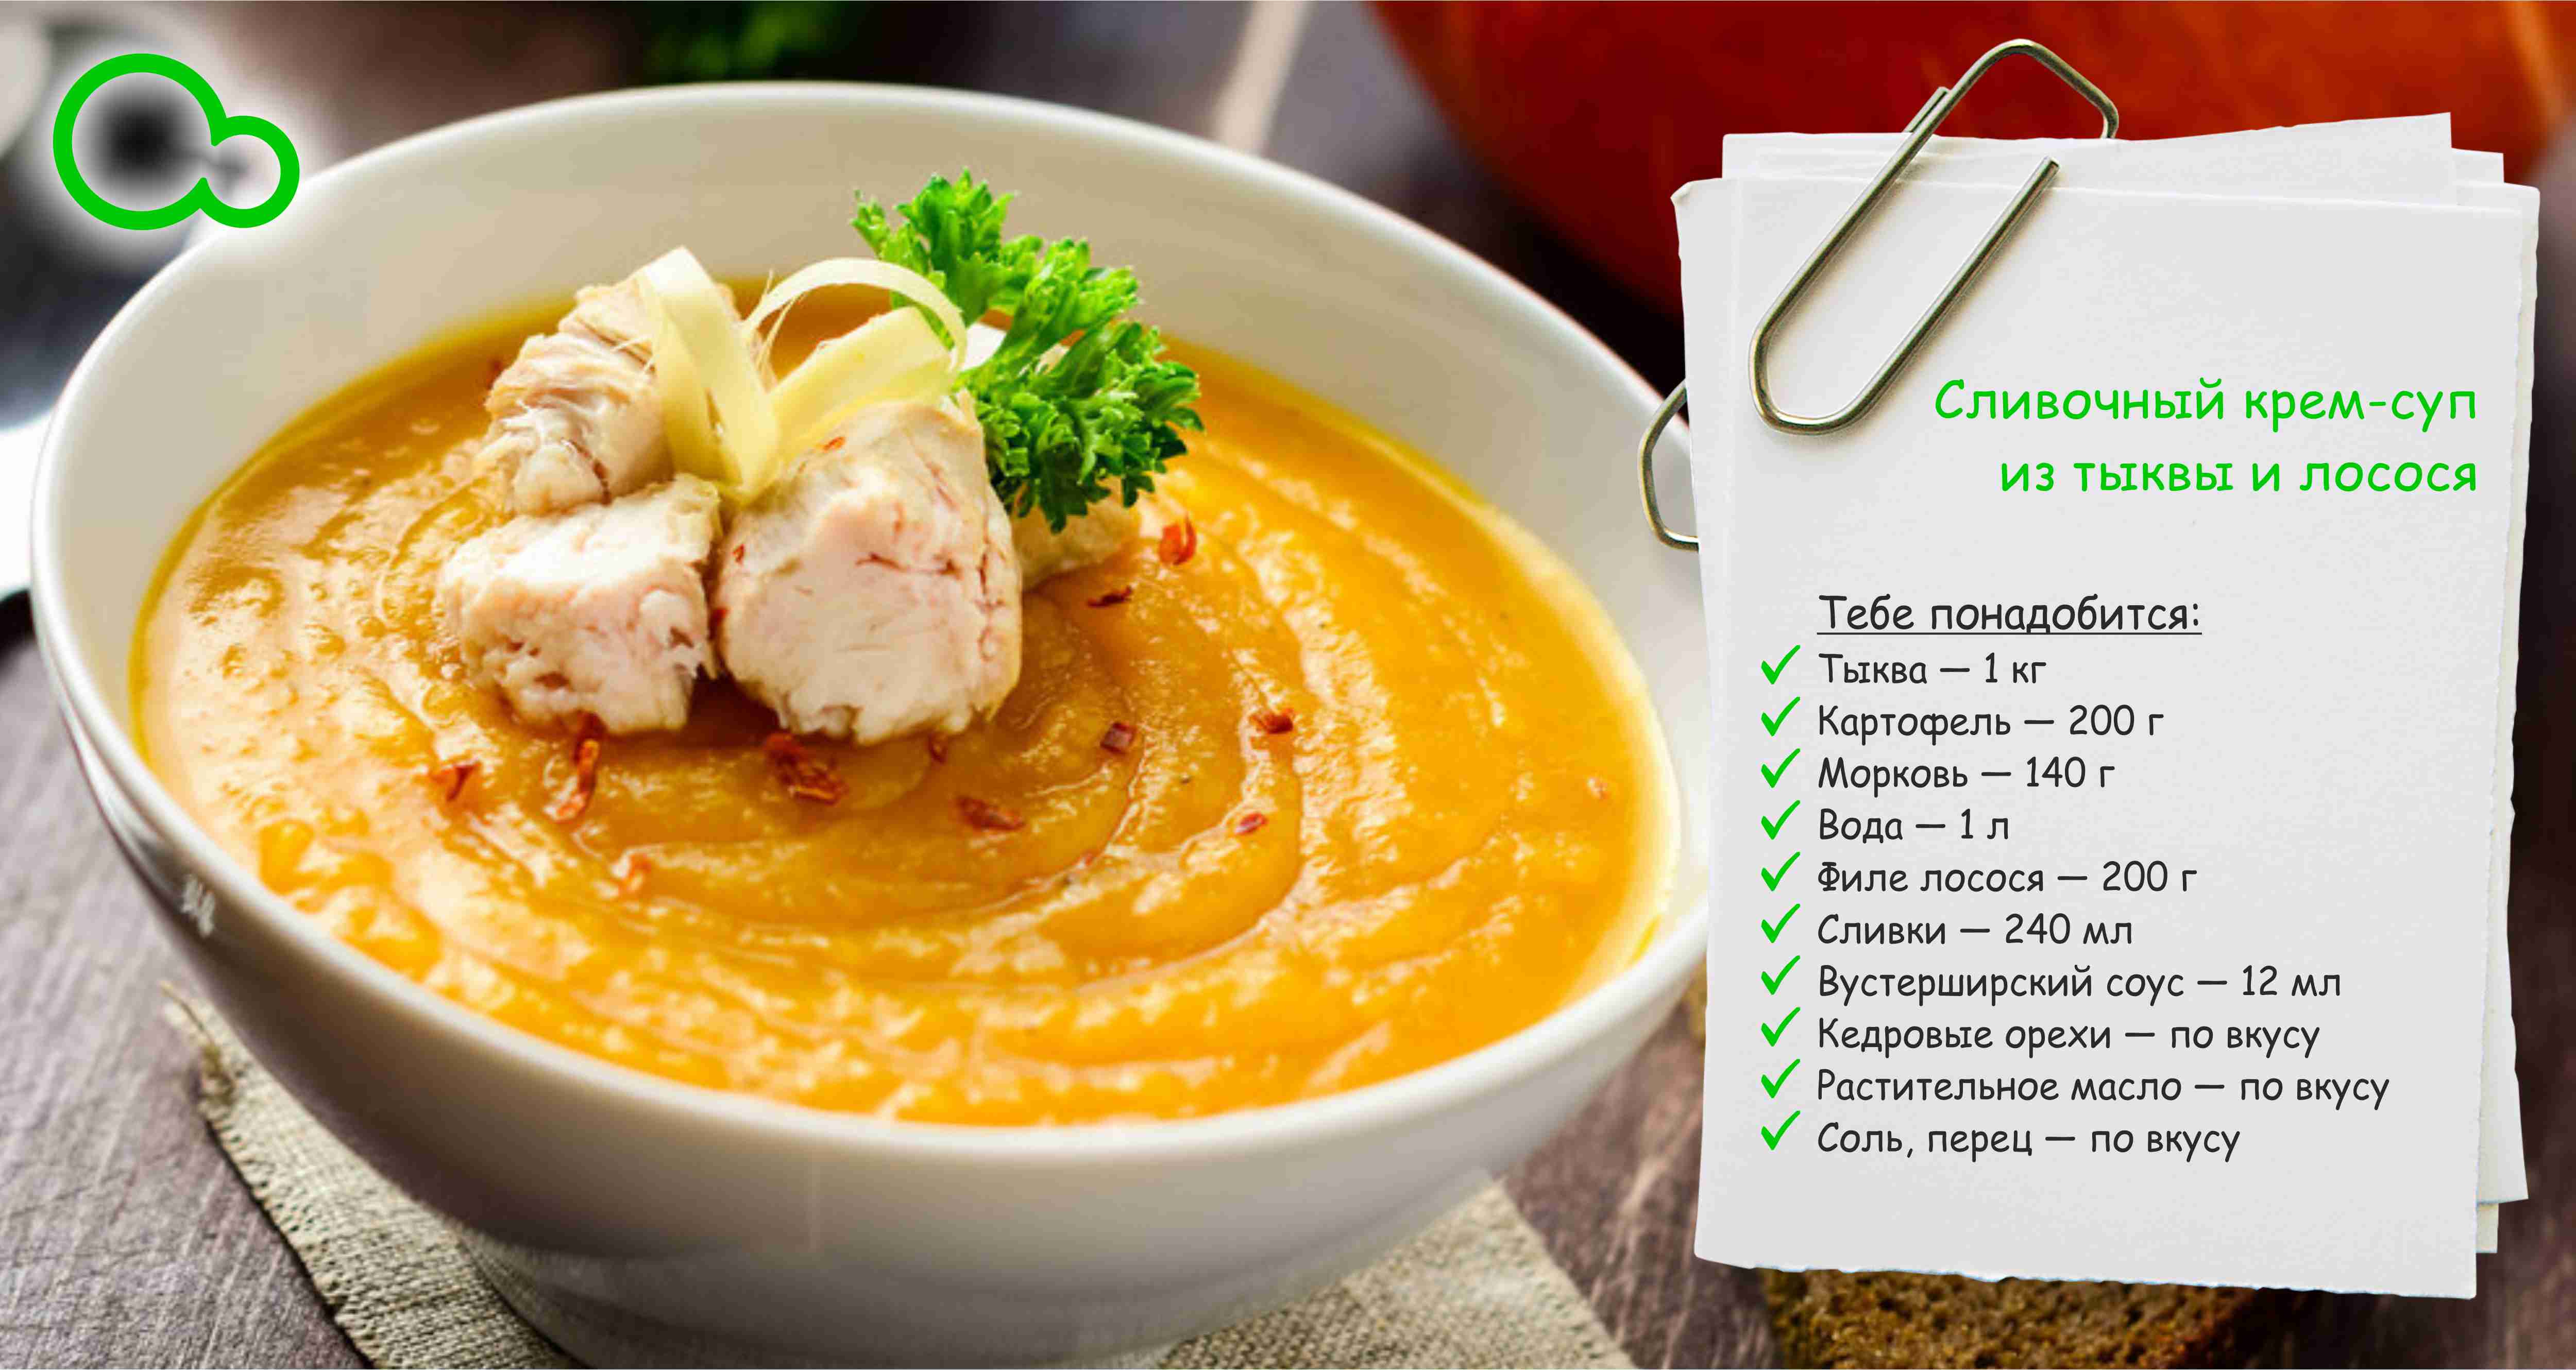 Крем суп из лосося - полезный и питательный: рецепт с фото и видео